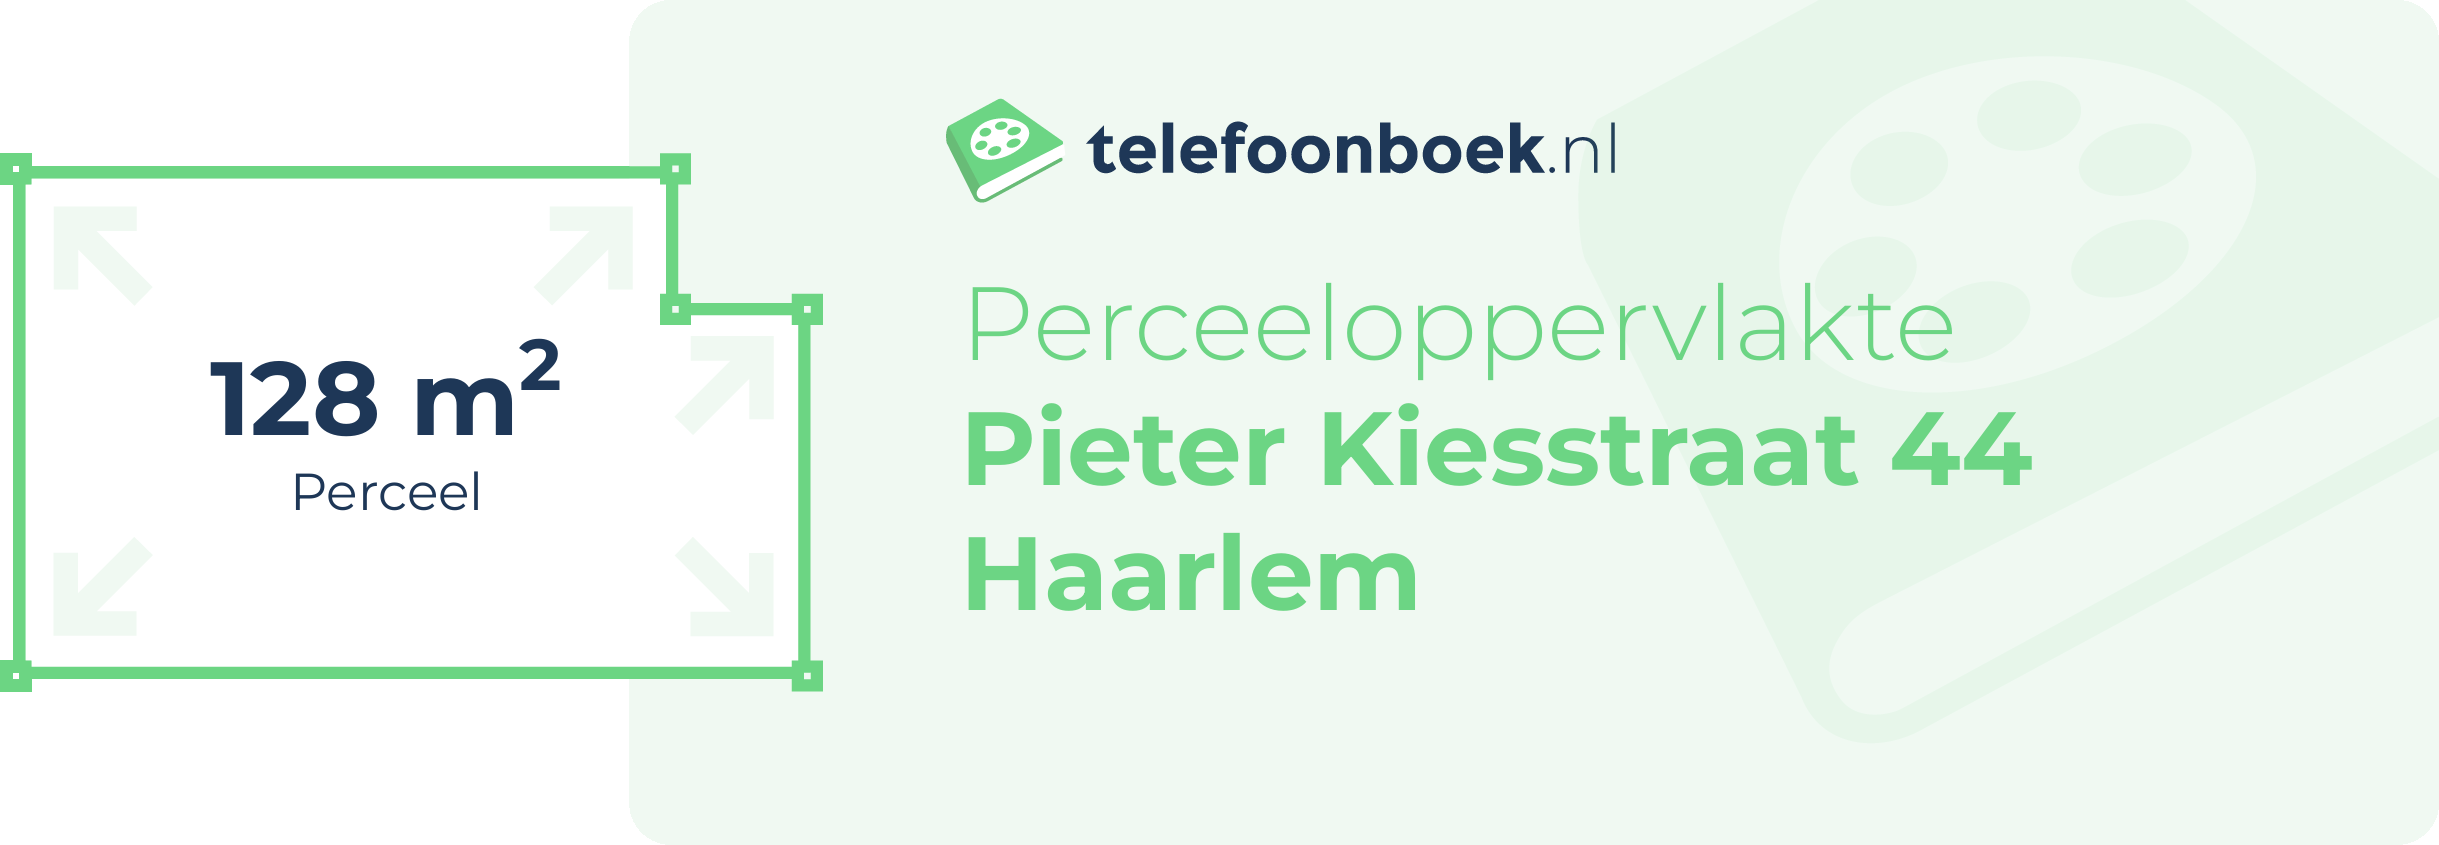 Perceeloppervlakte Pieter Kiesstraat 44 Haarlem